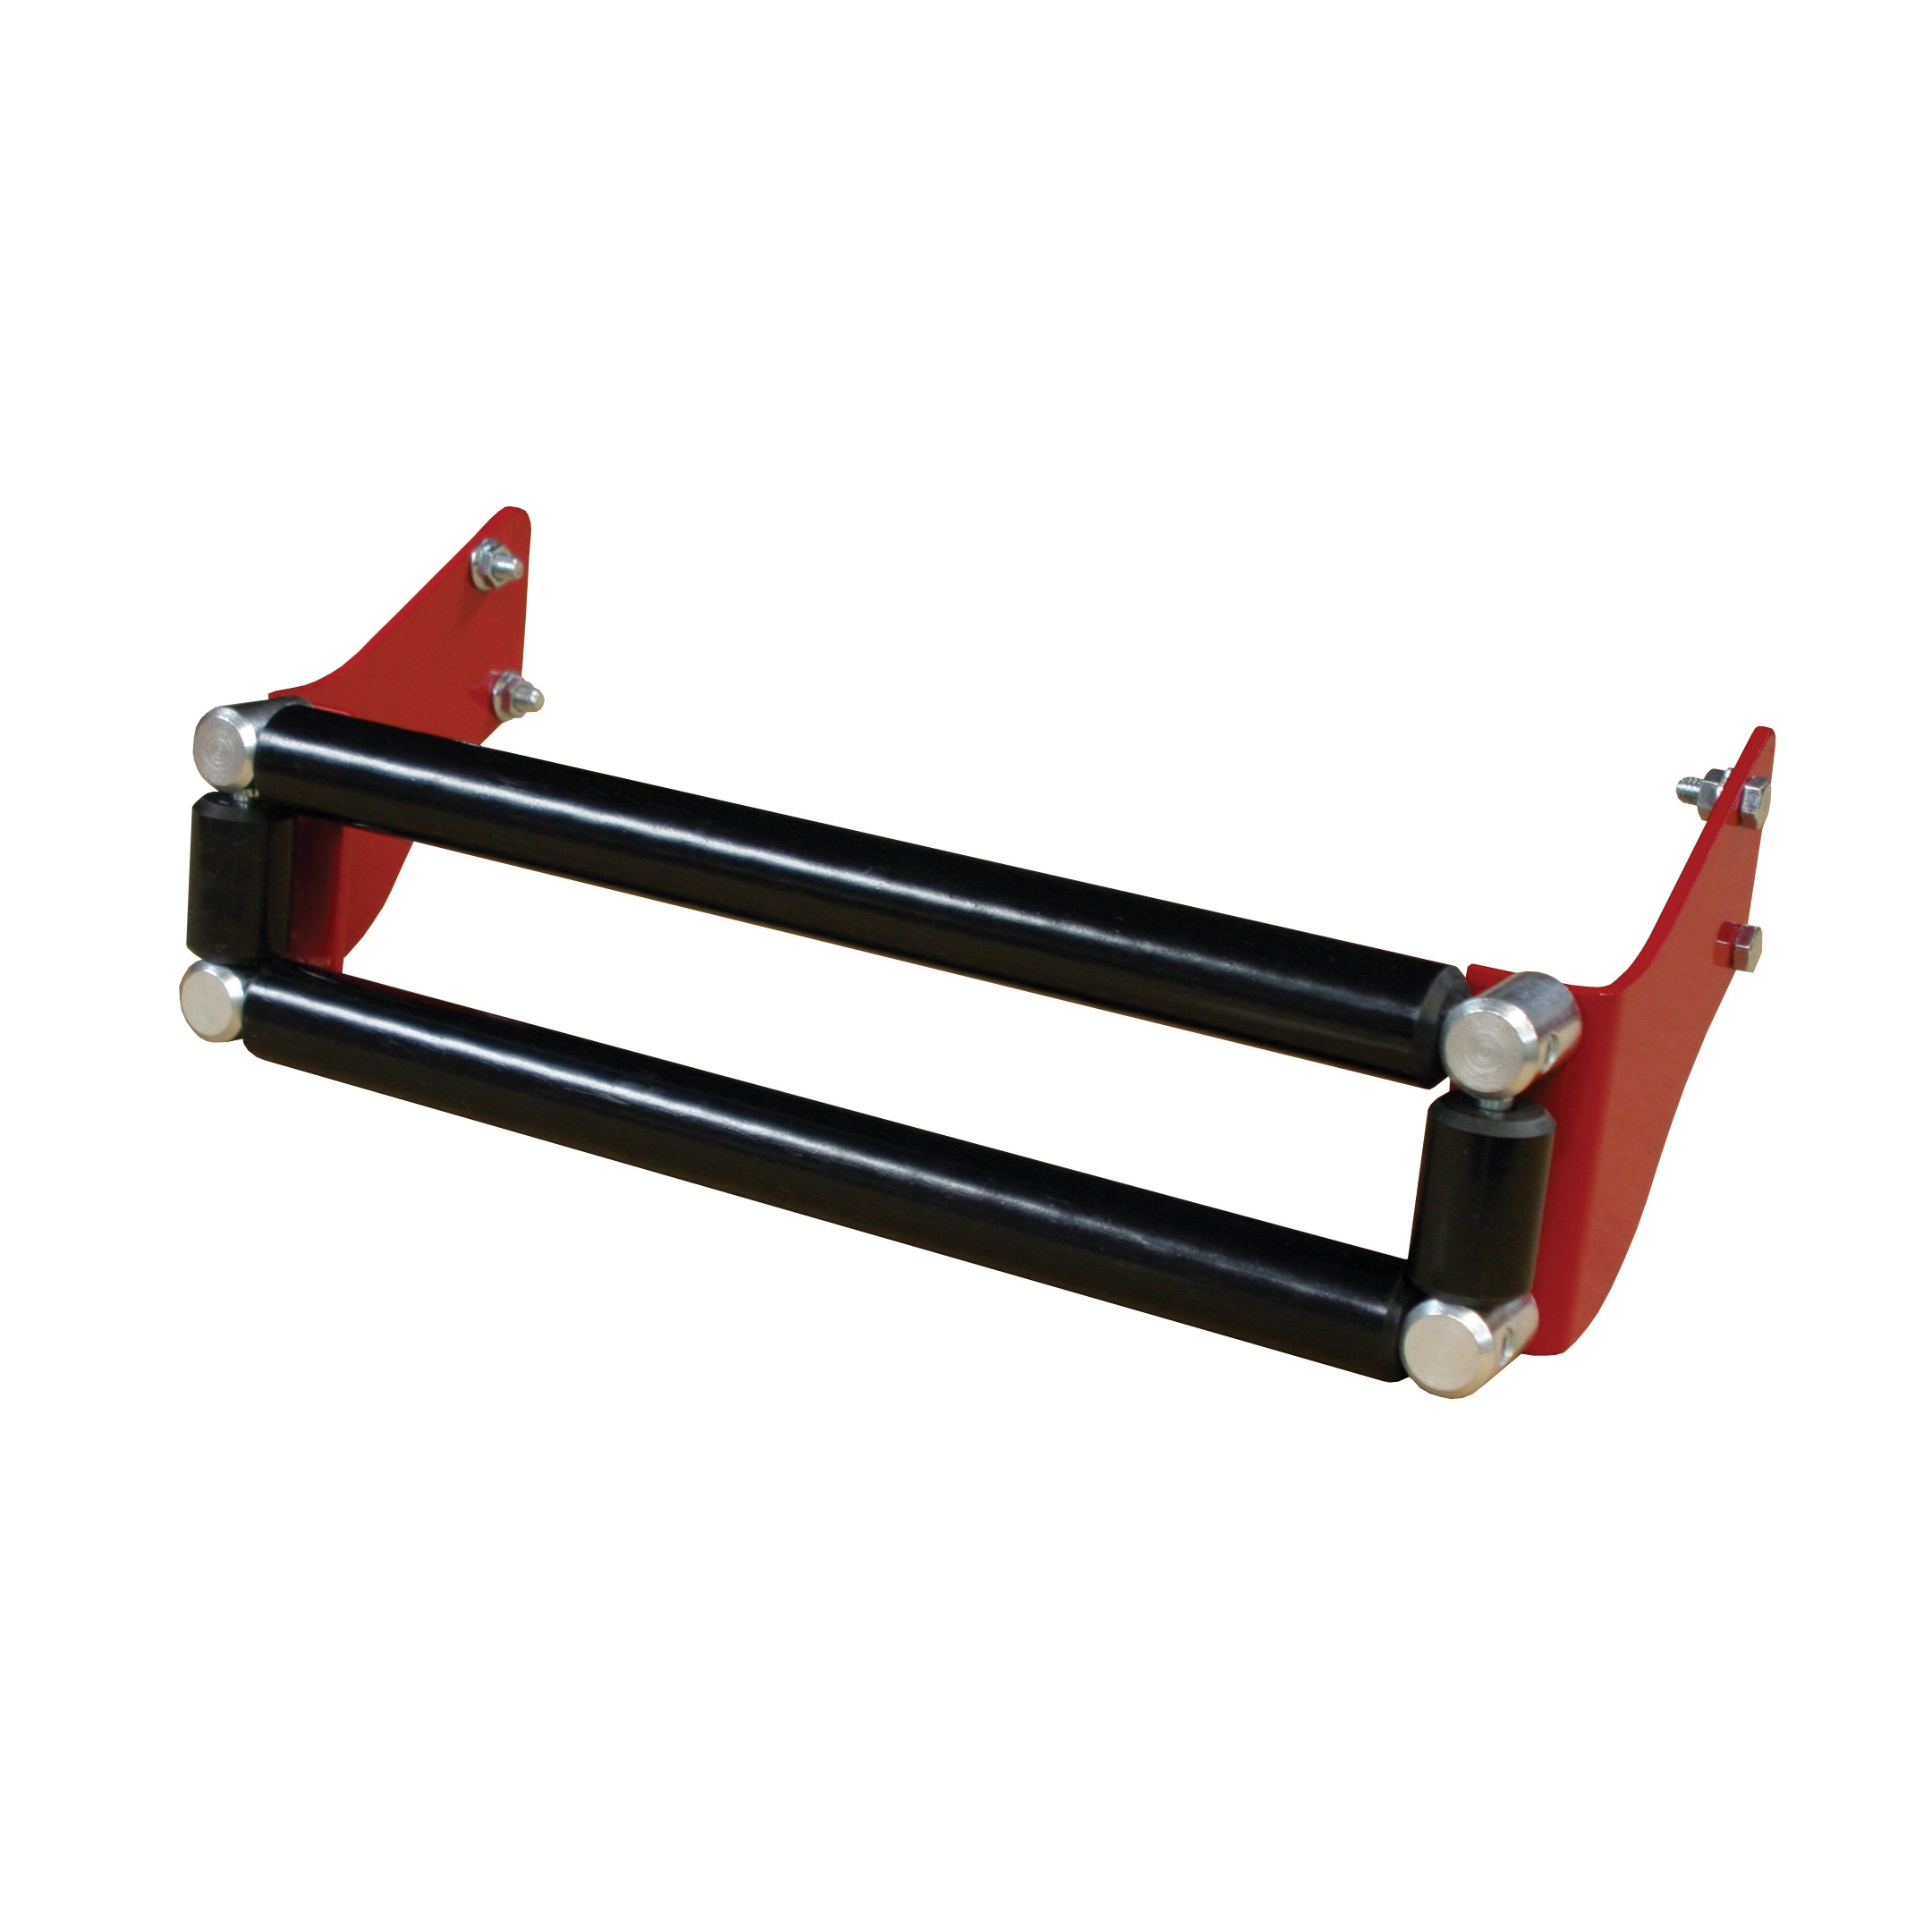 Locking Extending Roller Guide for VS-1 Hose Reel - 350mm